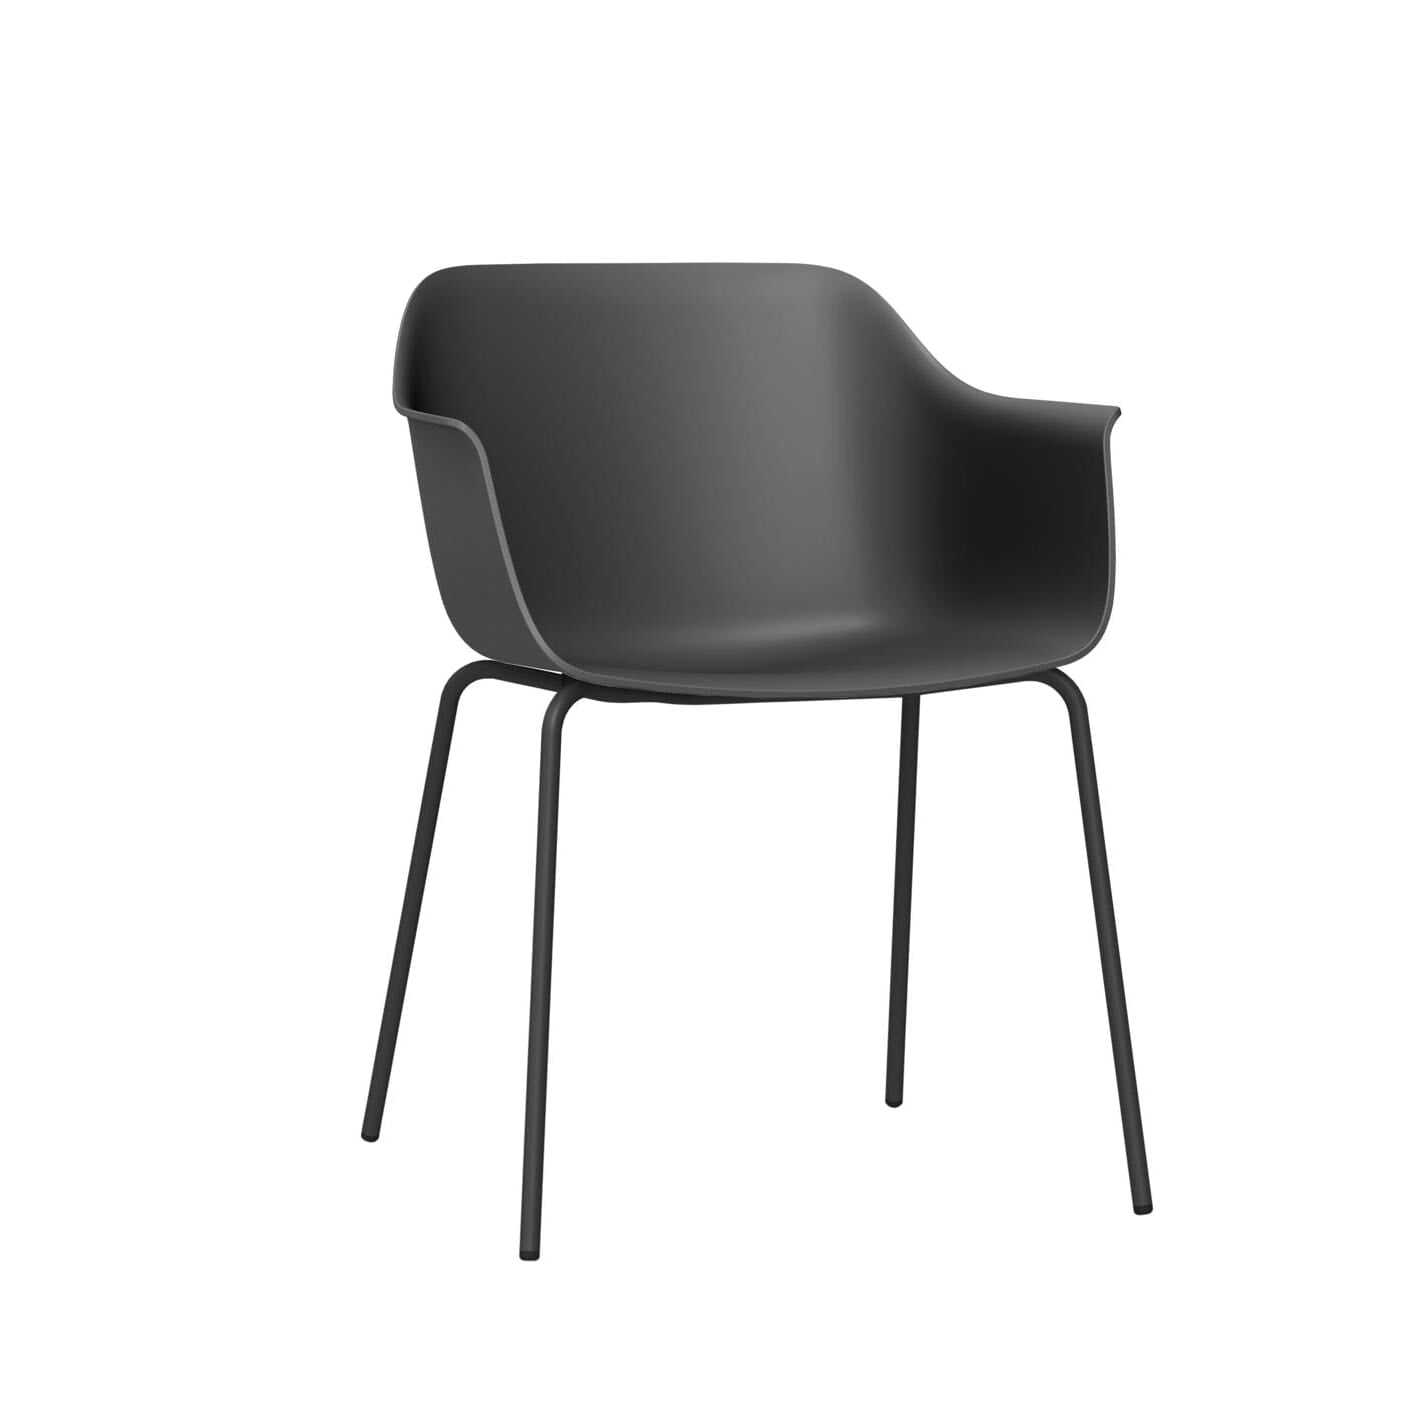 Resolse shape armchair 4 legs indoor dark gray